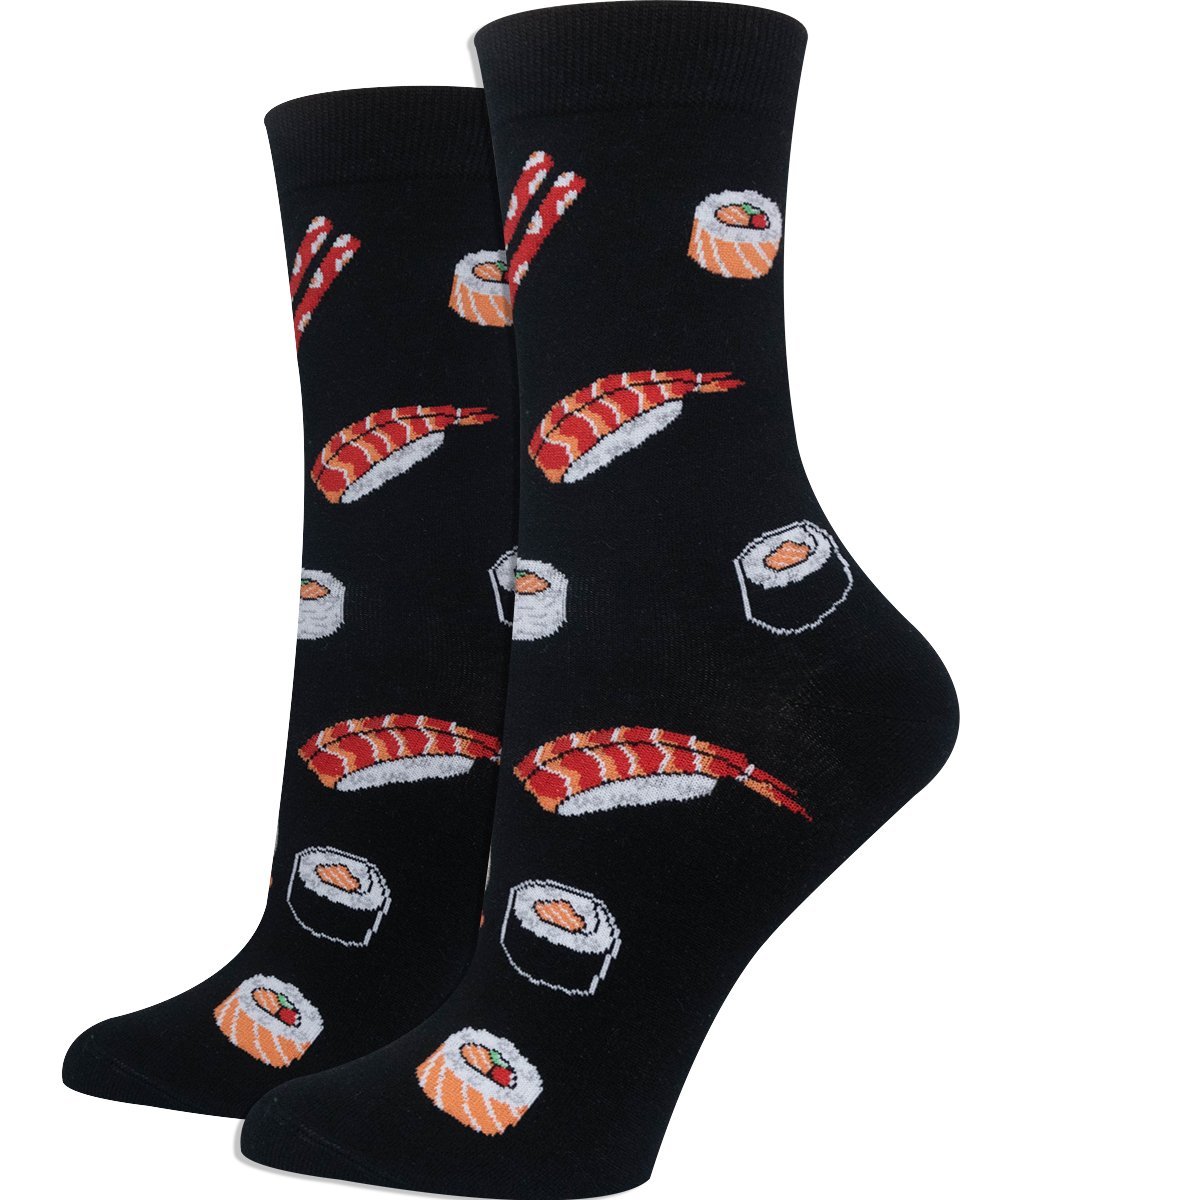 Sushi Rocks Socks, Novelty Socks For Women